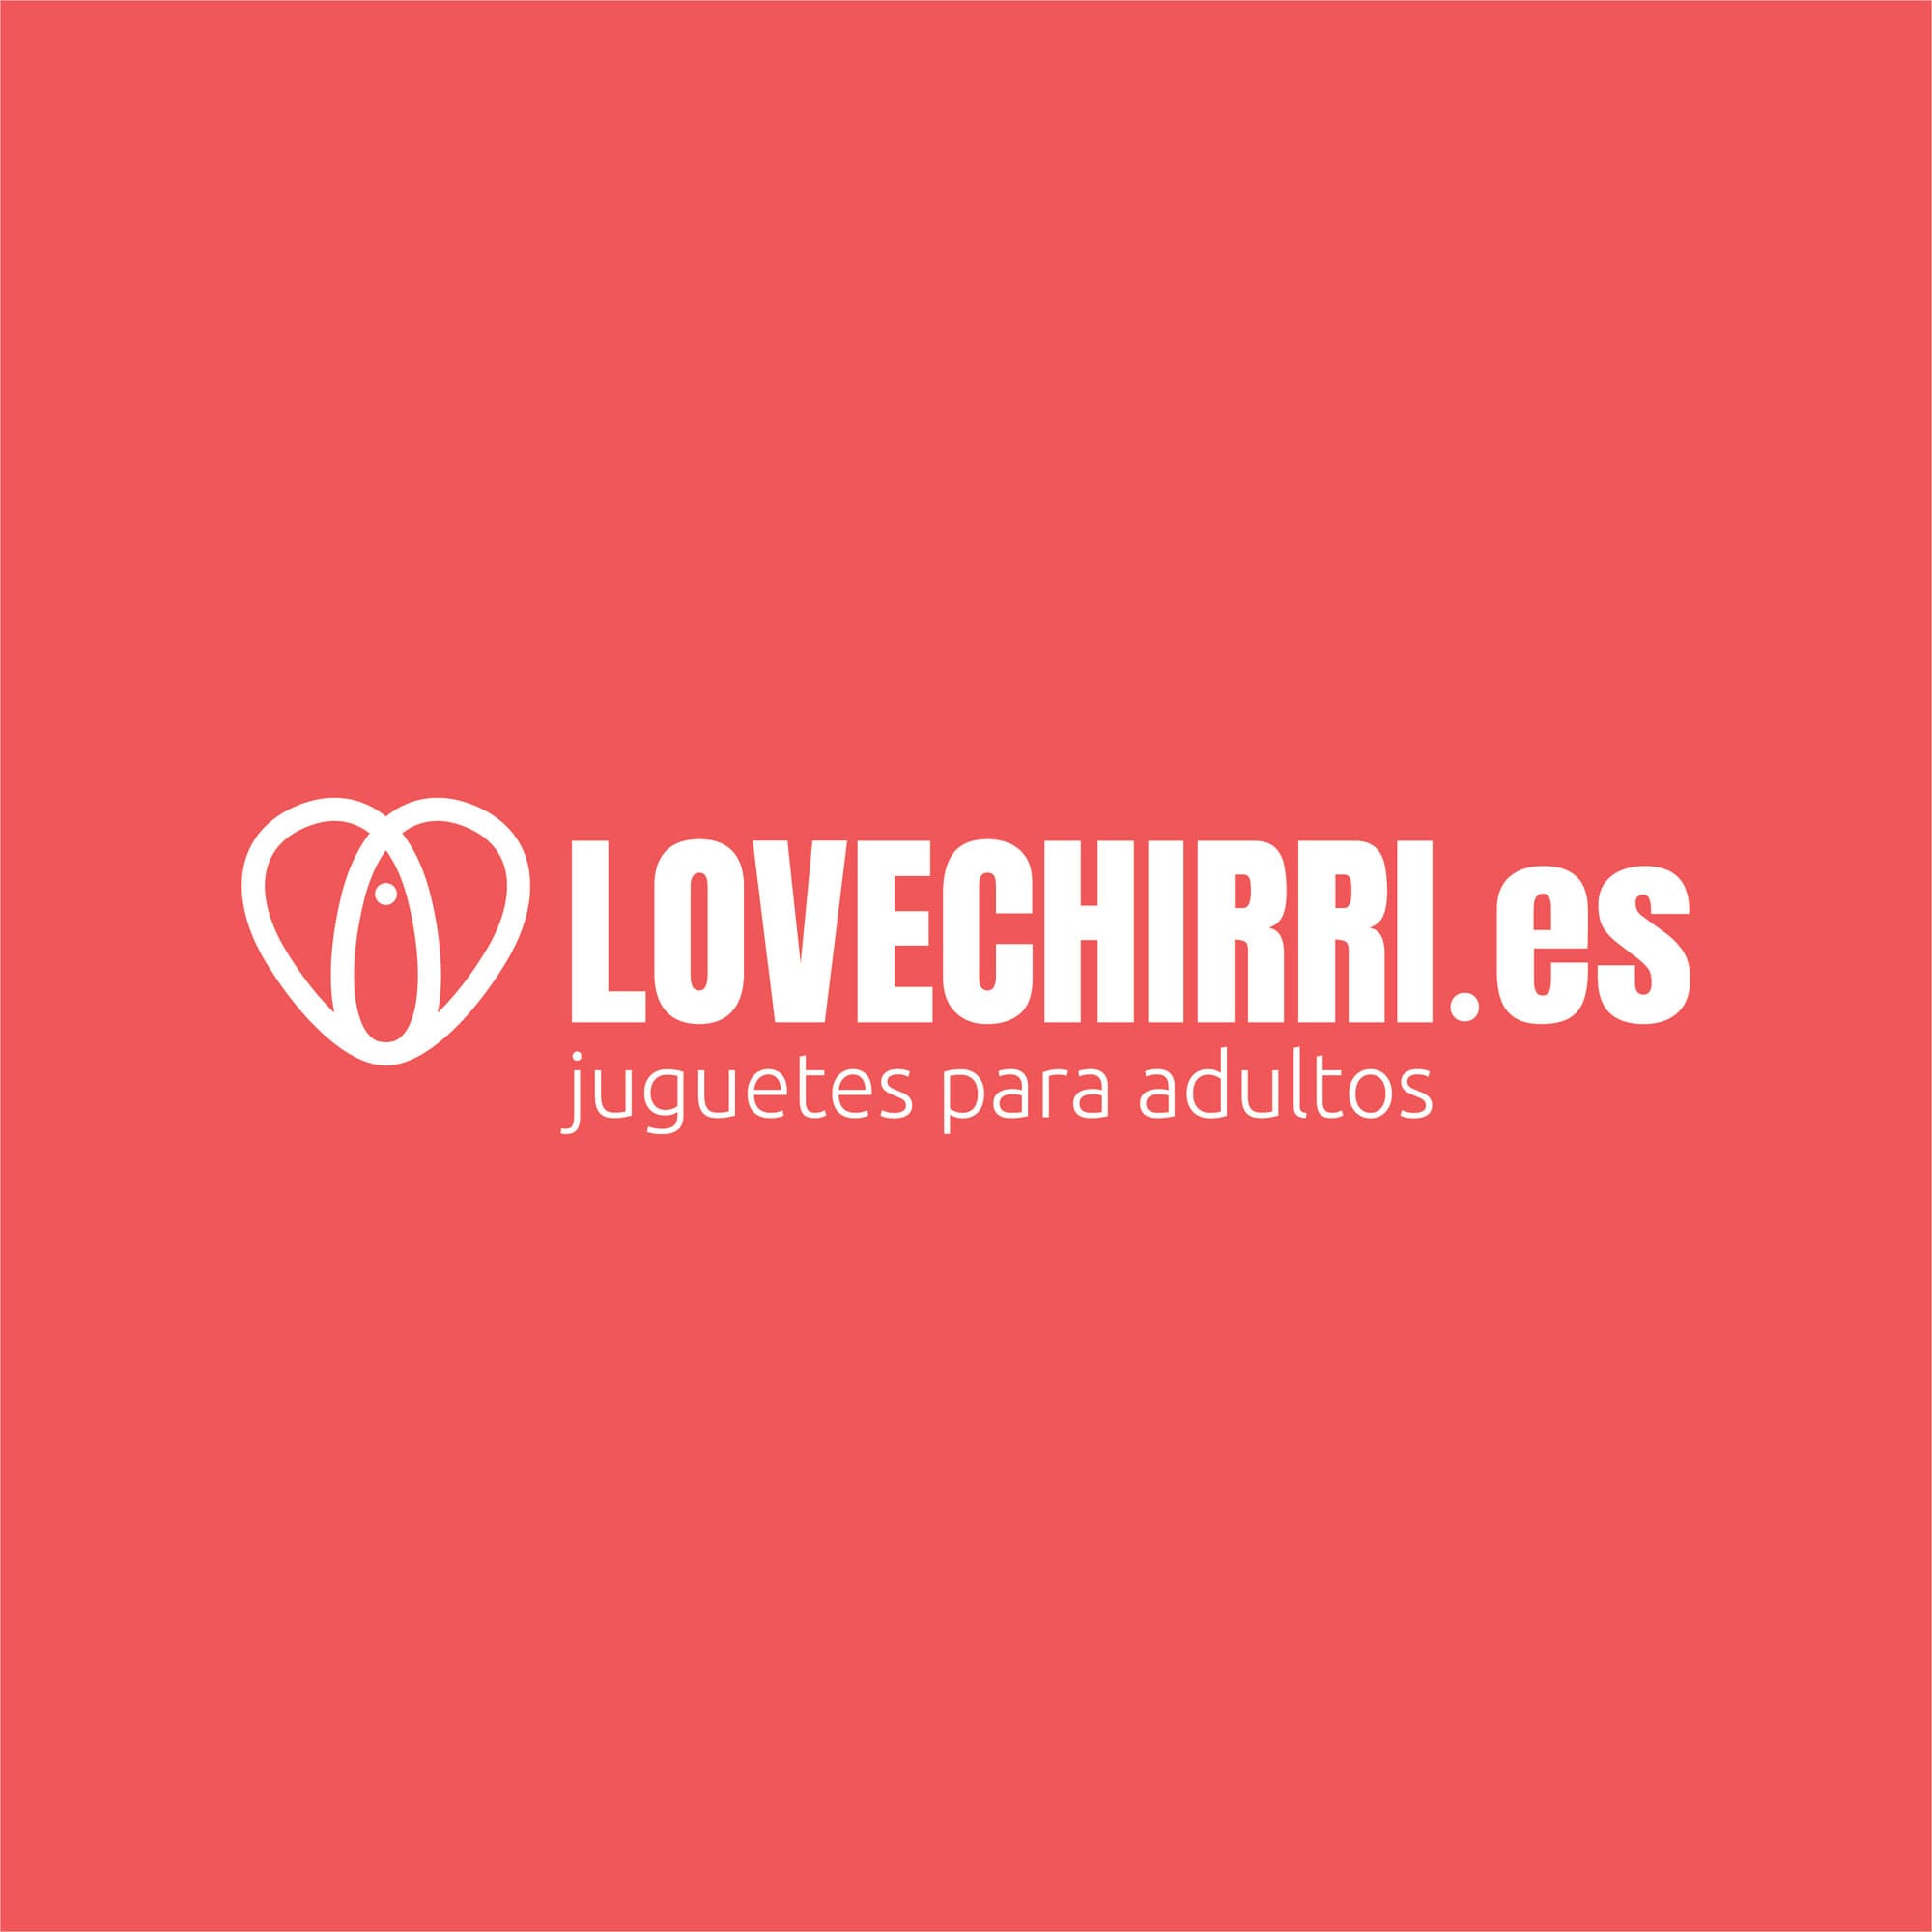 Logotipo para Lovechirri.es, empresa de venta online de juguetes para adultos